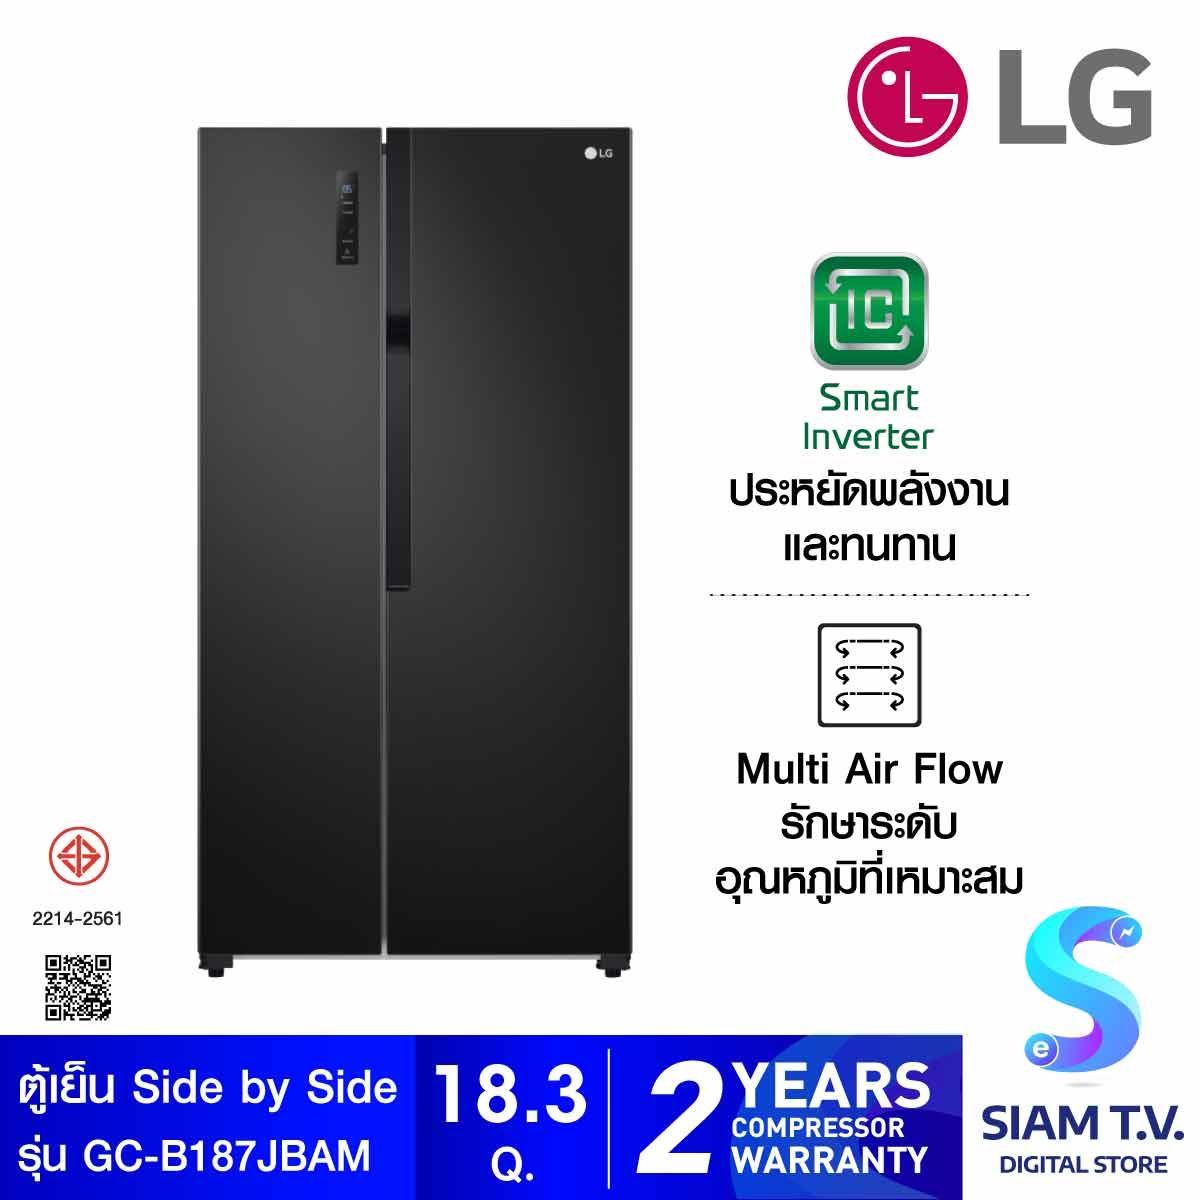 LG ตู้เย็น Side by Side 18.3Q ระบบ Smart Inverter สีดำ รุ่น GC-B187JBAM